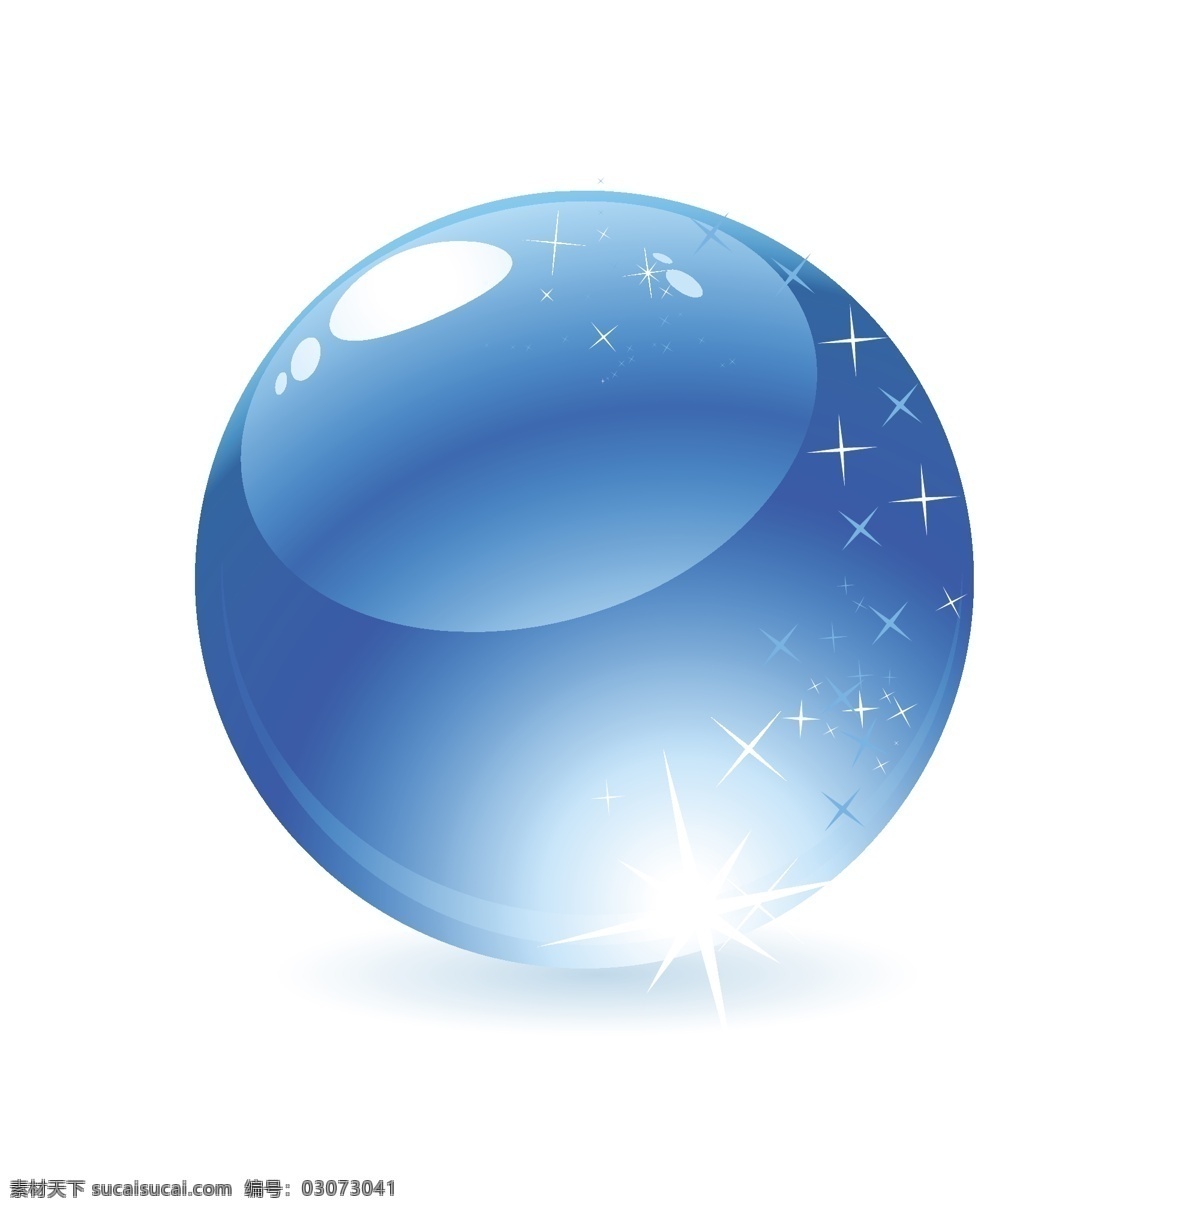 球体 水晶 水晶球 水晶球体 3d 向量 透明 透明的水晶球 水晶球矢量蓝 泡 蓝色 蓝色的水晶 矢量图 其他矢量图